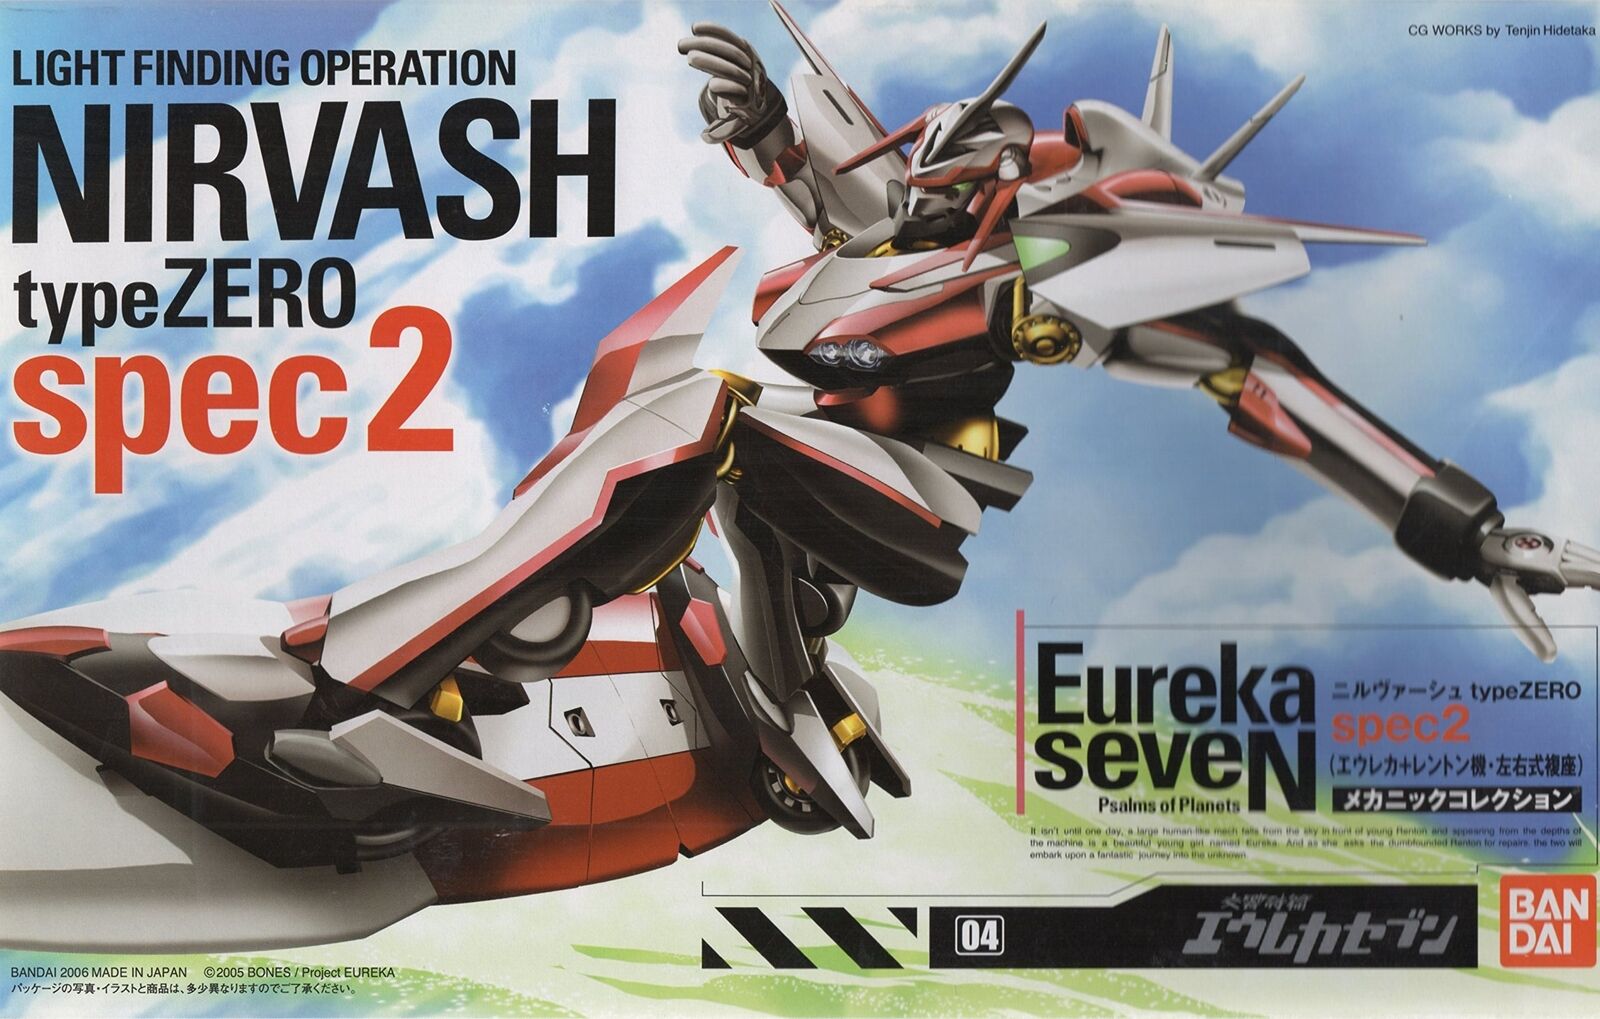 Bandai Eureka Seven - Nirvash Spec2 Plastic Model kit F/S w/Tracking# Japan New